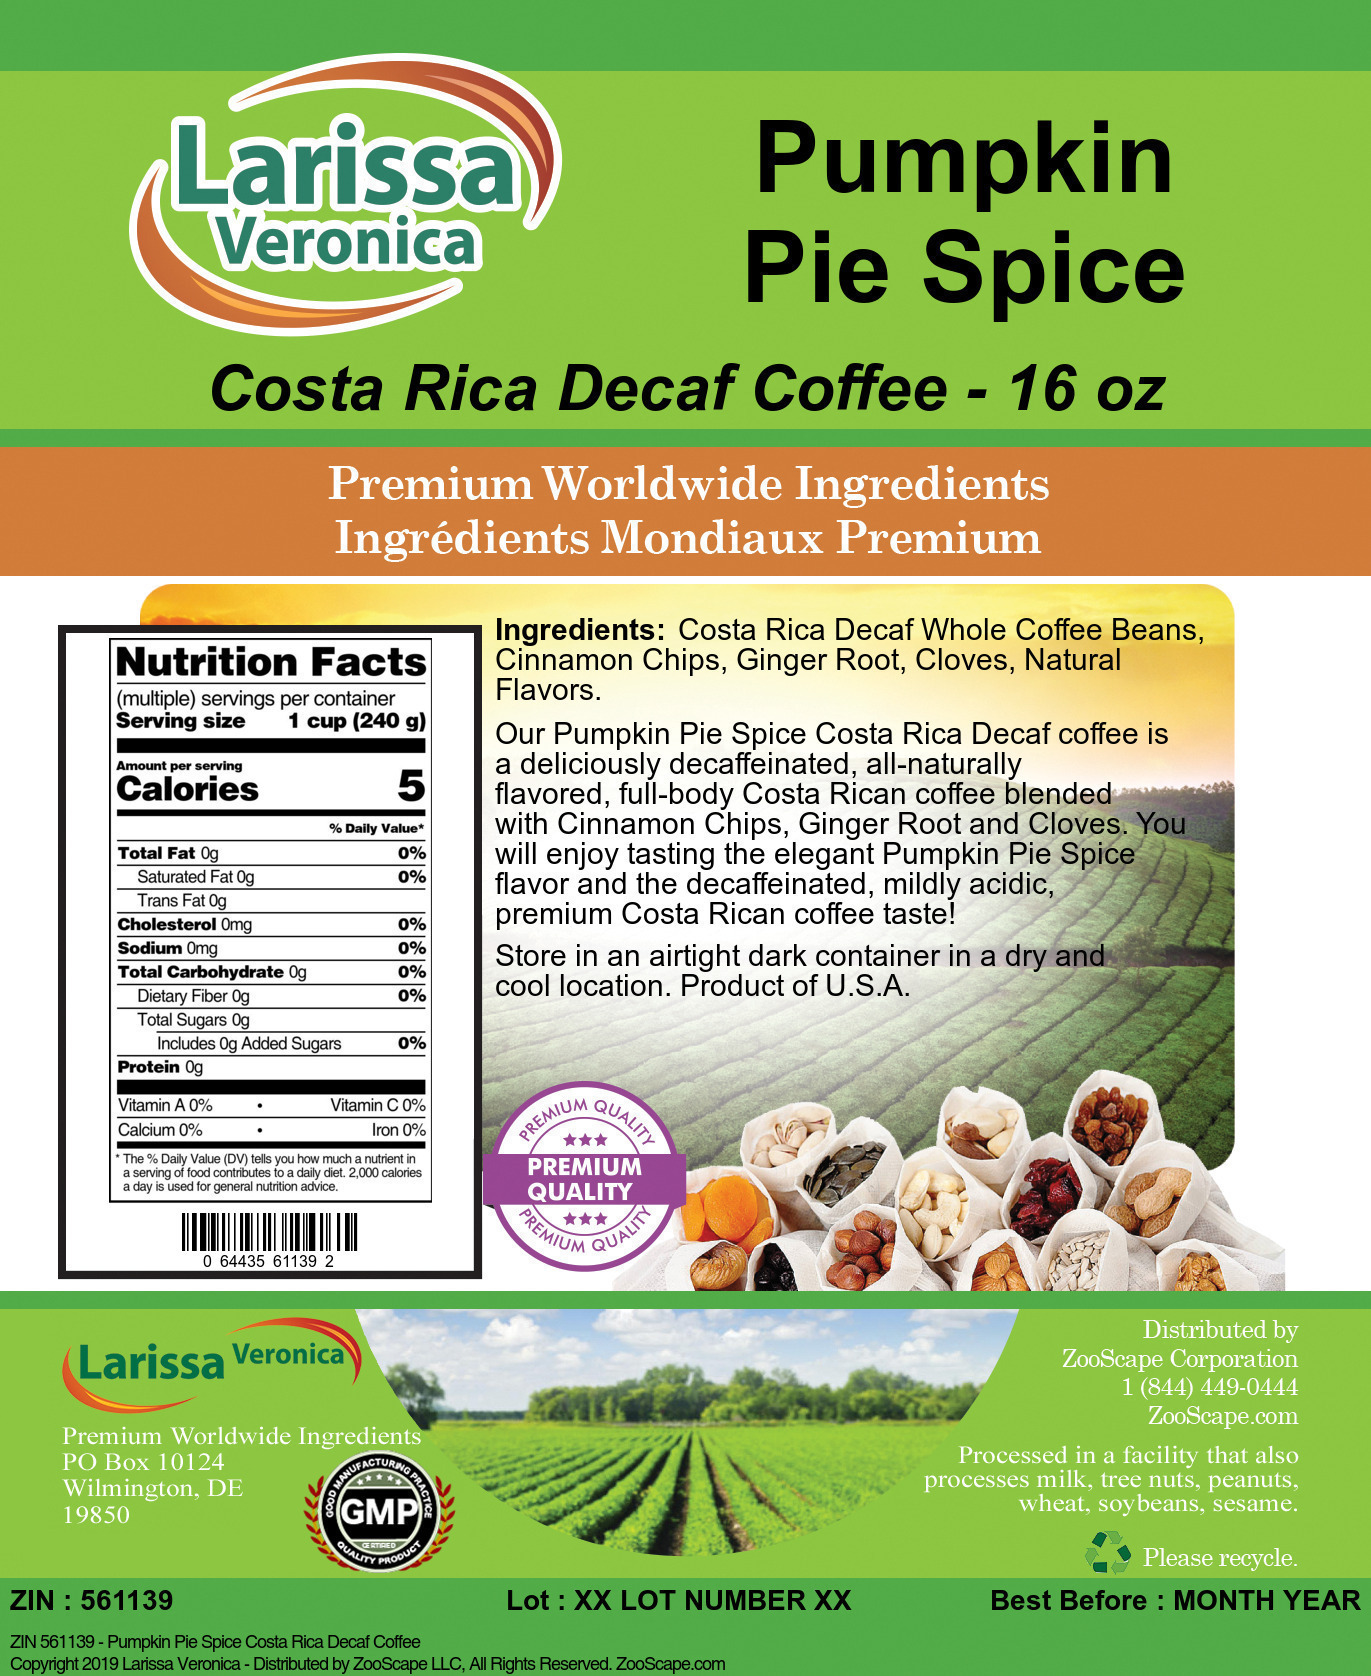 Pumpkin Pie Spice Costa Rica Decaf Coffee - Label